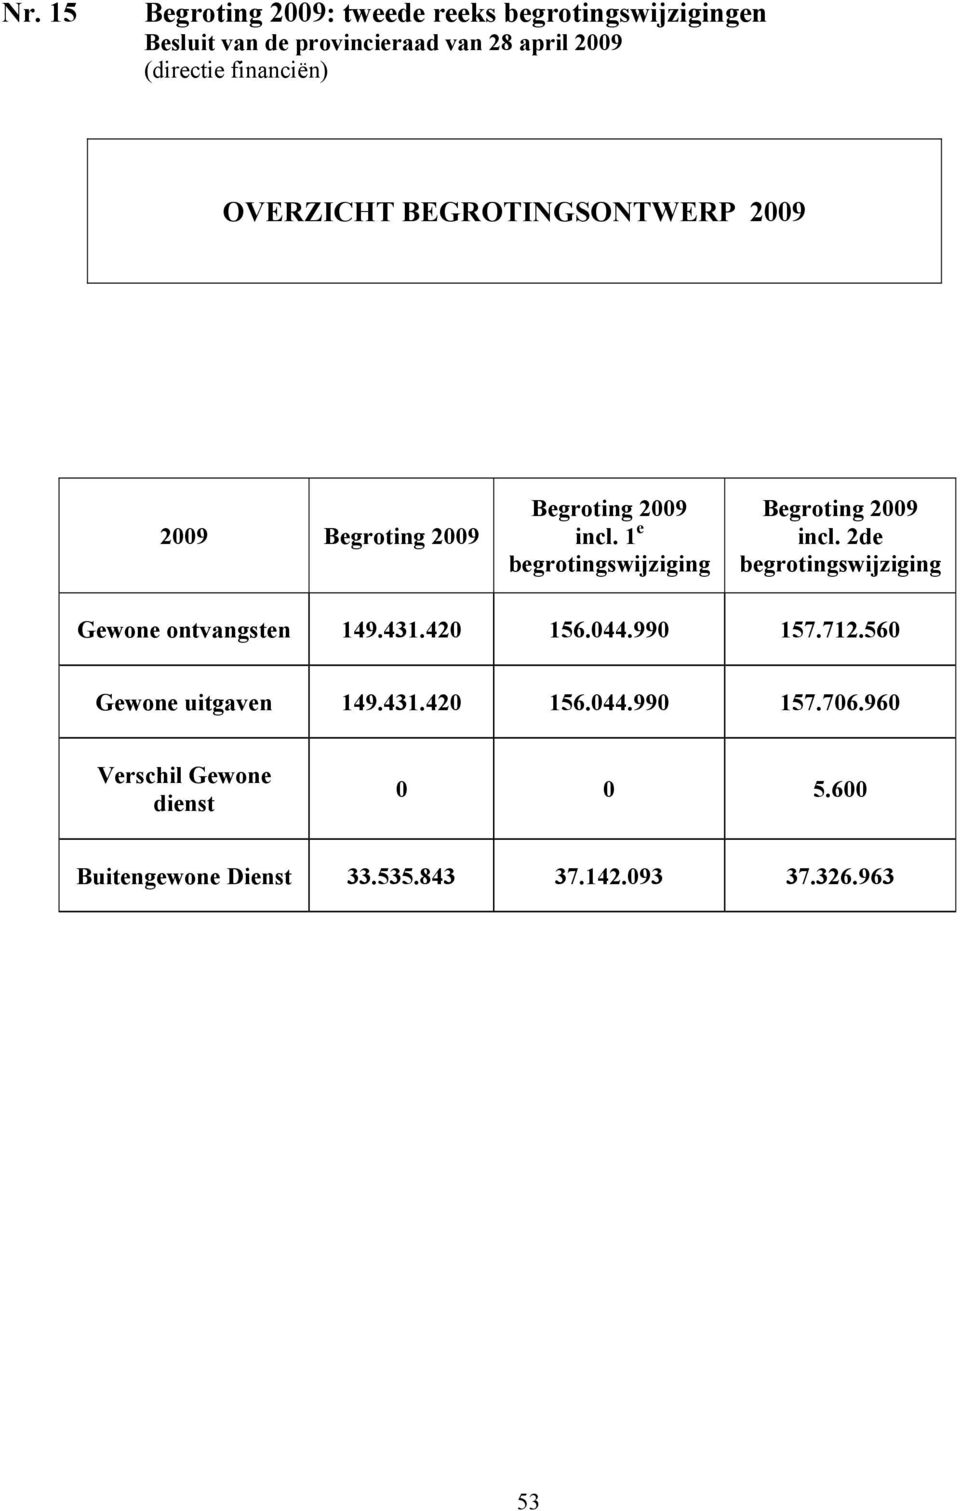 1 e begrotingswijziging Begroting 2009 incl. 2de begrotingswijziging Gewone ontvangsten 149.431.420 156.044.990 157.